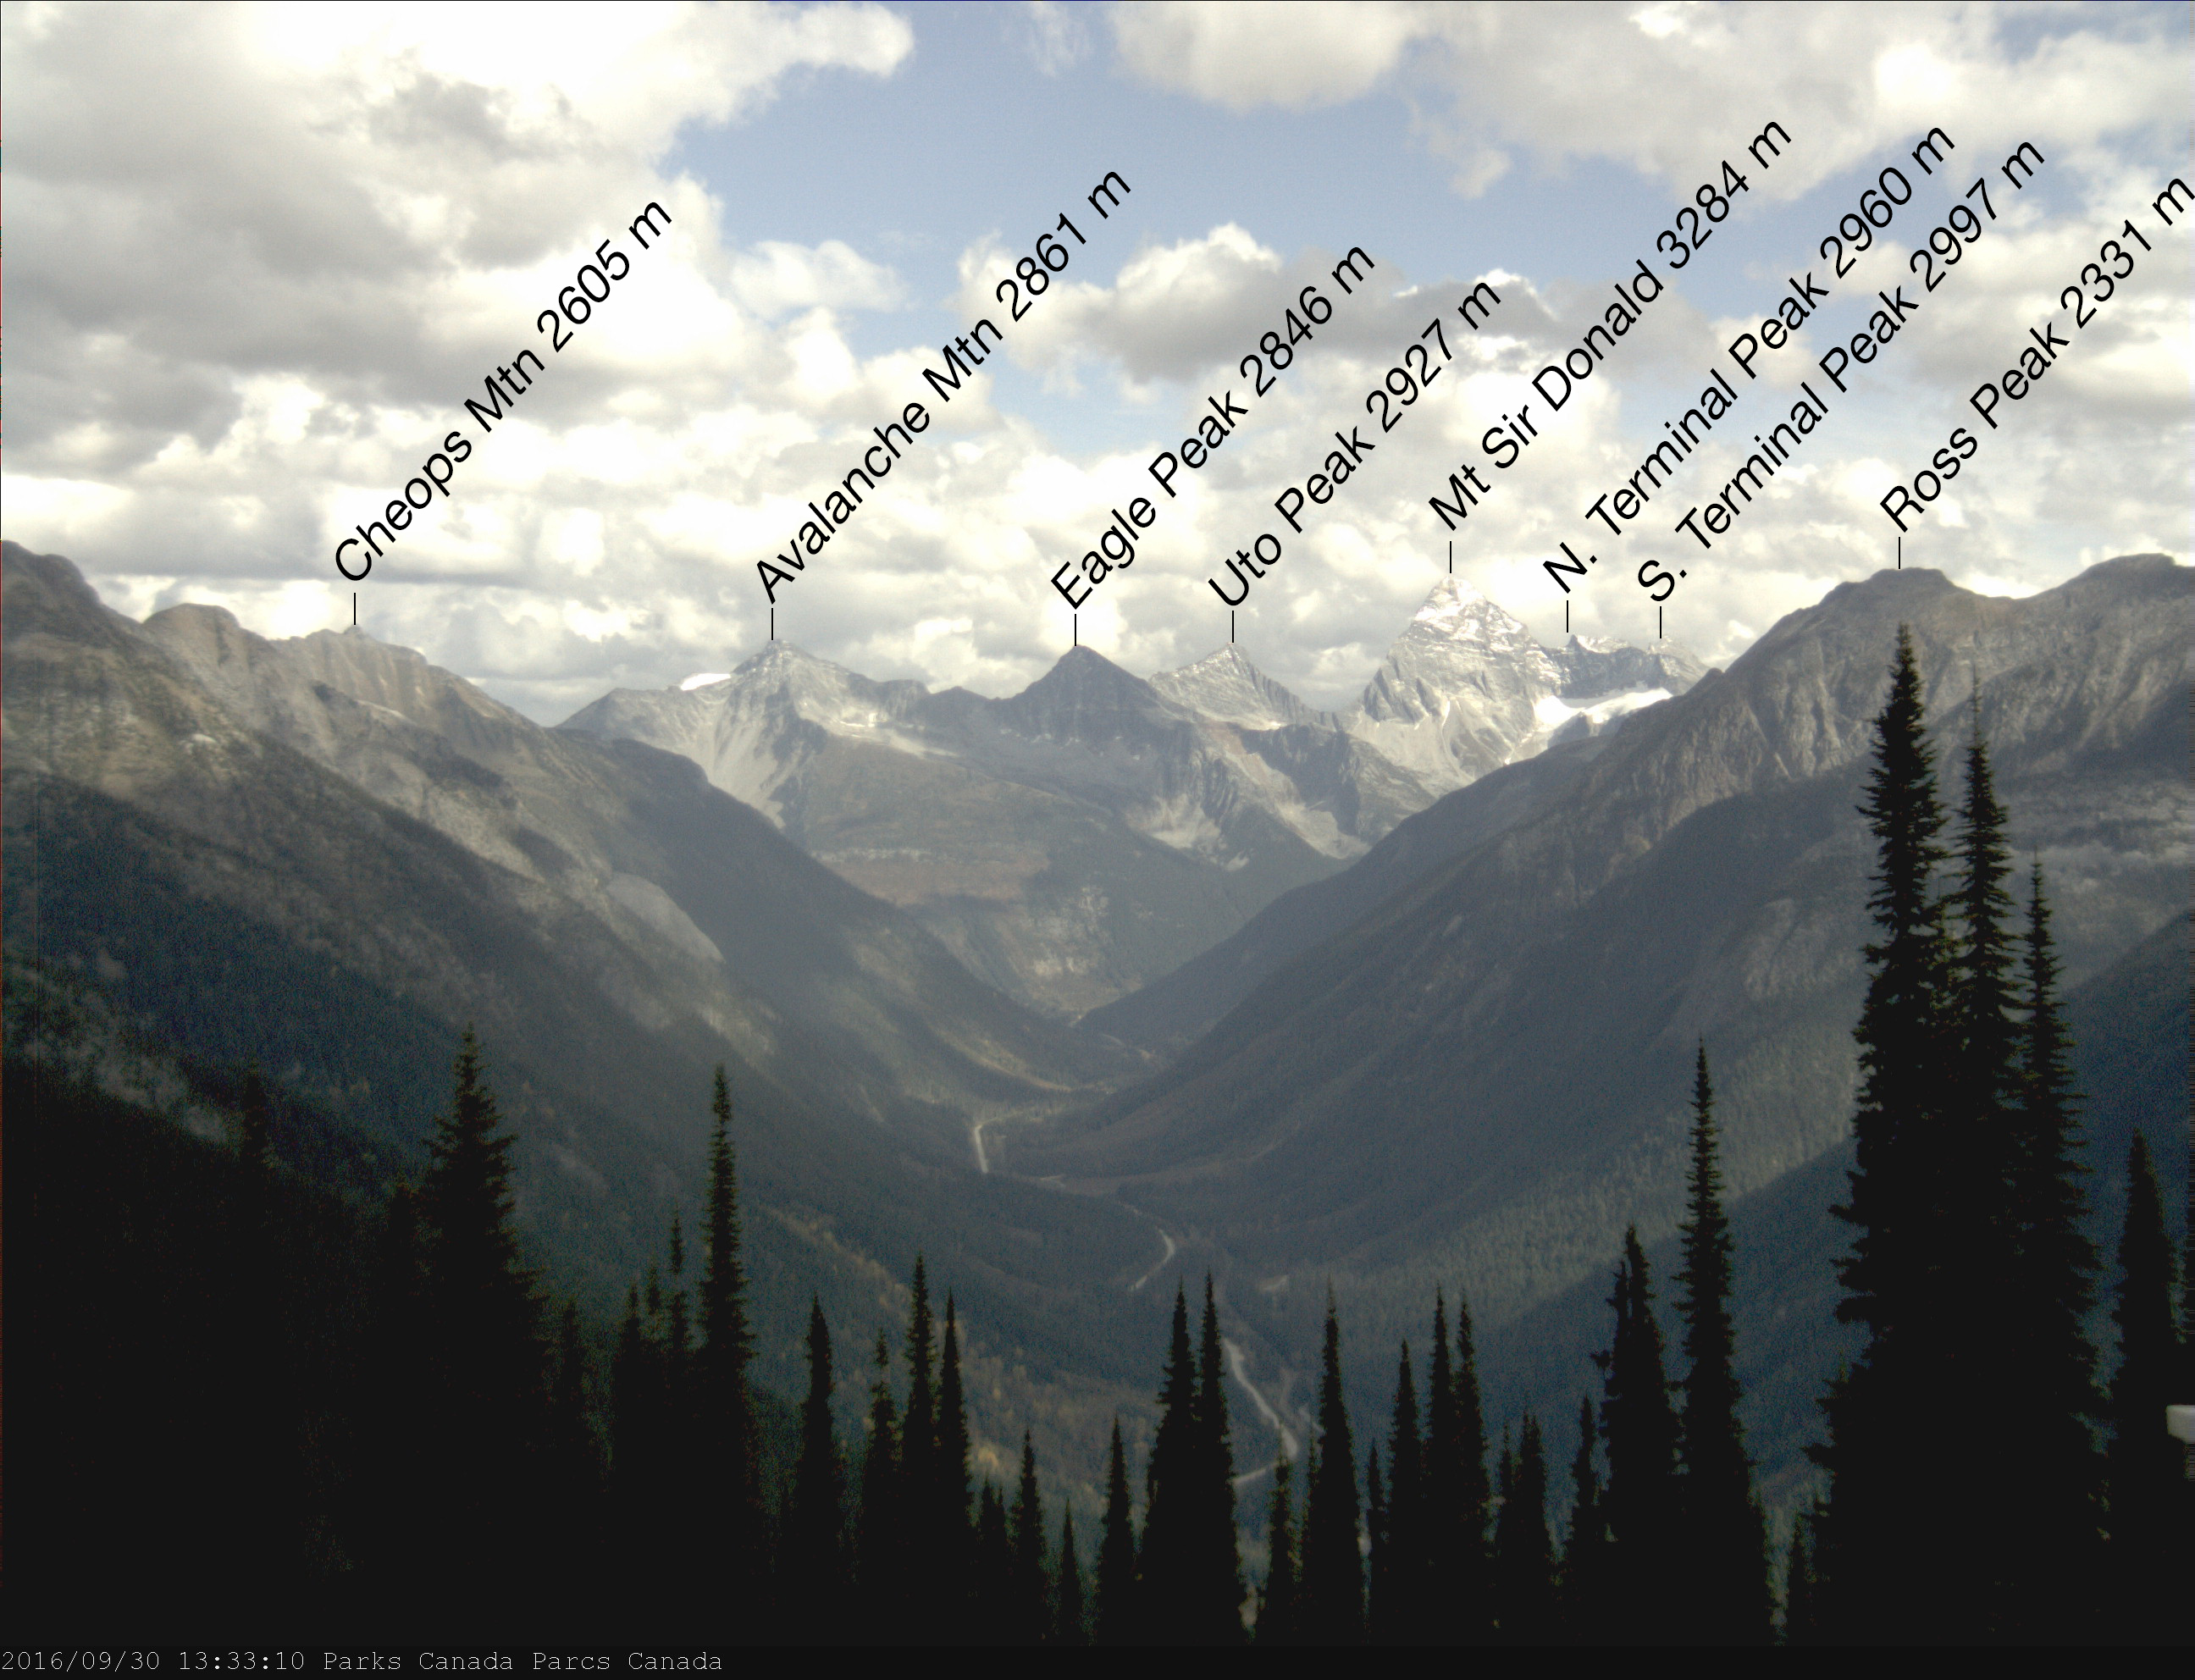 Vue sur le chaînon Sir Donald dans le parc national des Glaciers, au Canada. Voici les éléments topographiques visibles : le mont Sir Donald, le pic Uto, le pic Eagle, le mont Avalanche, les pics Terminal et la vallée de l’Illecillewaet.